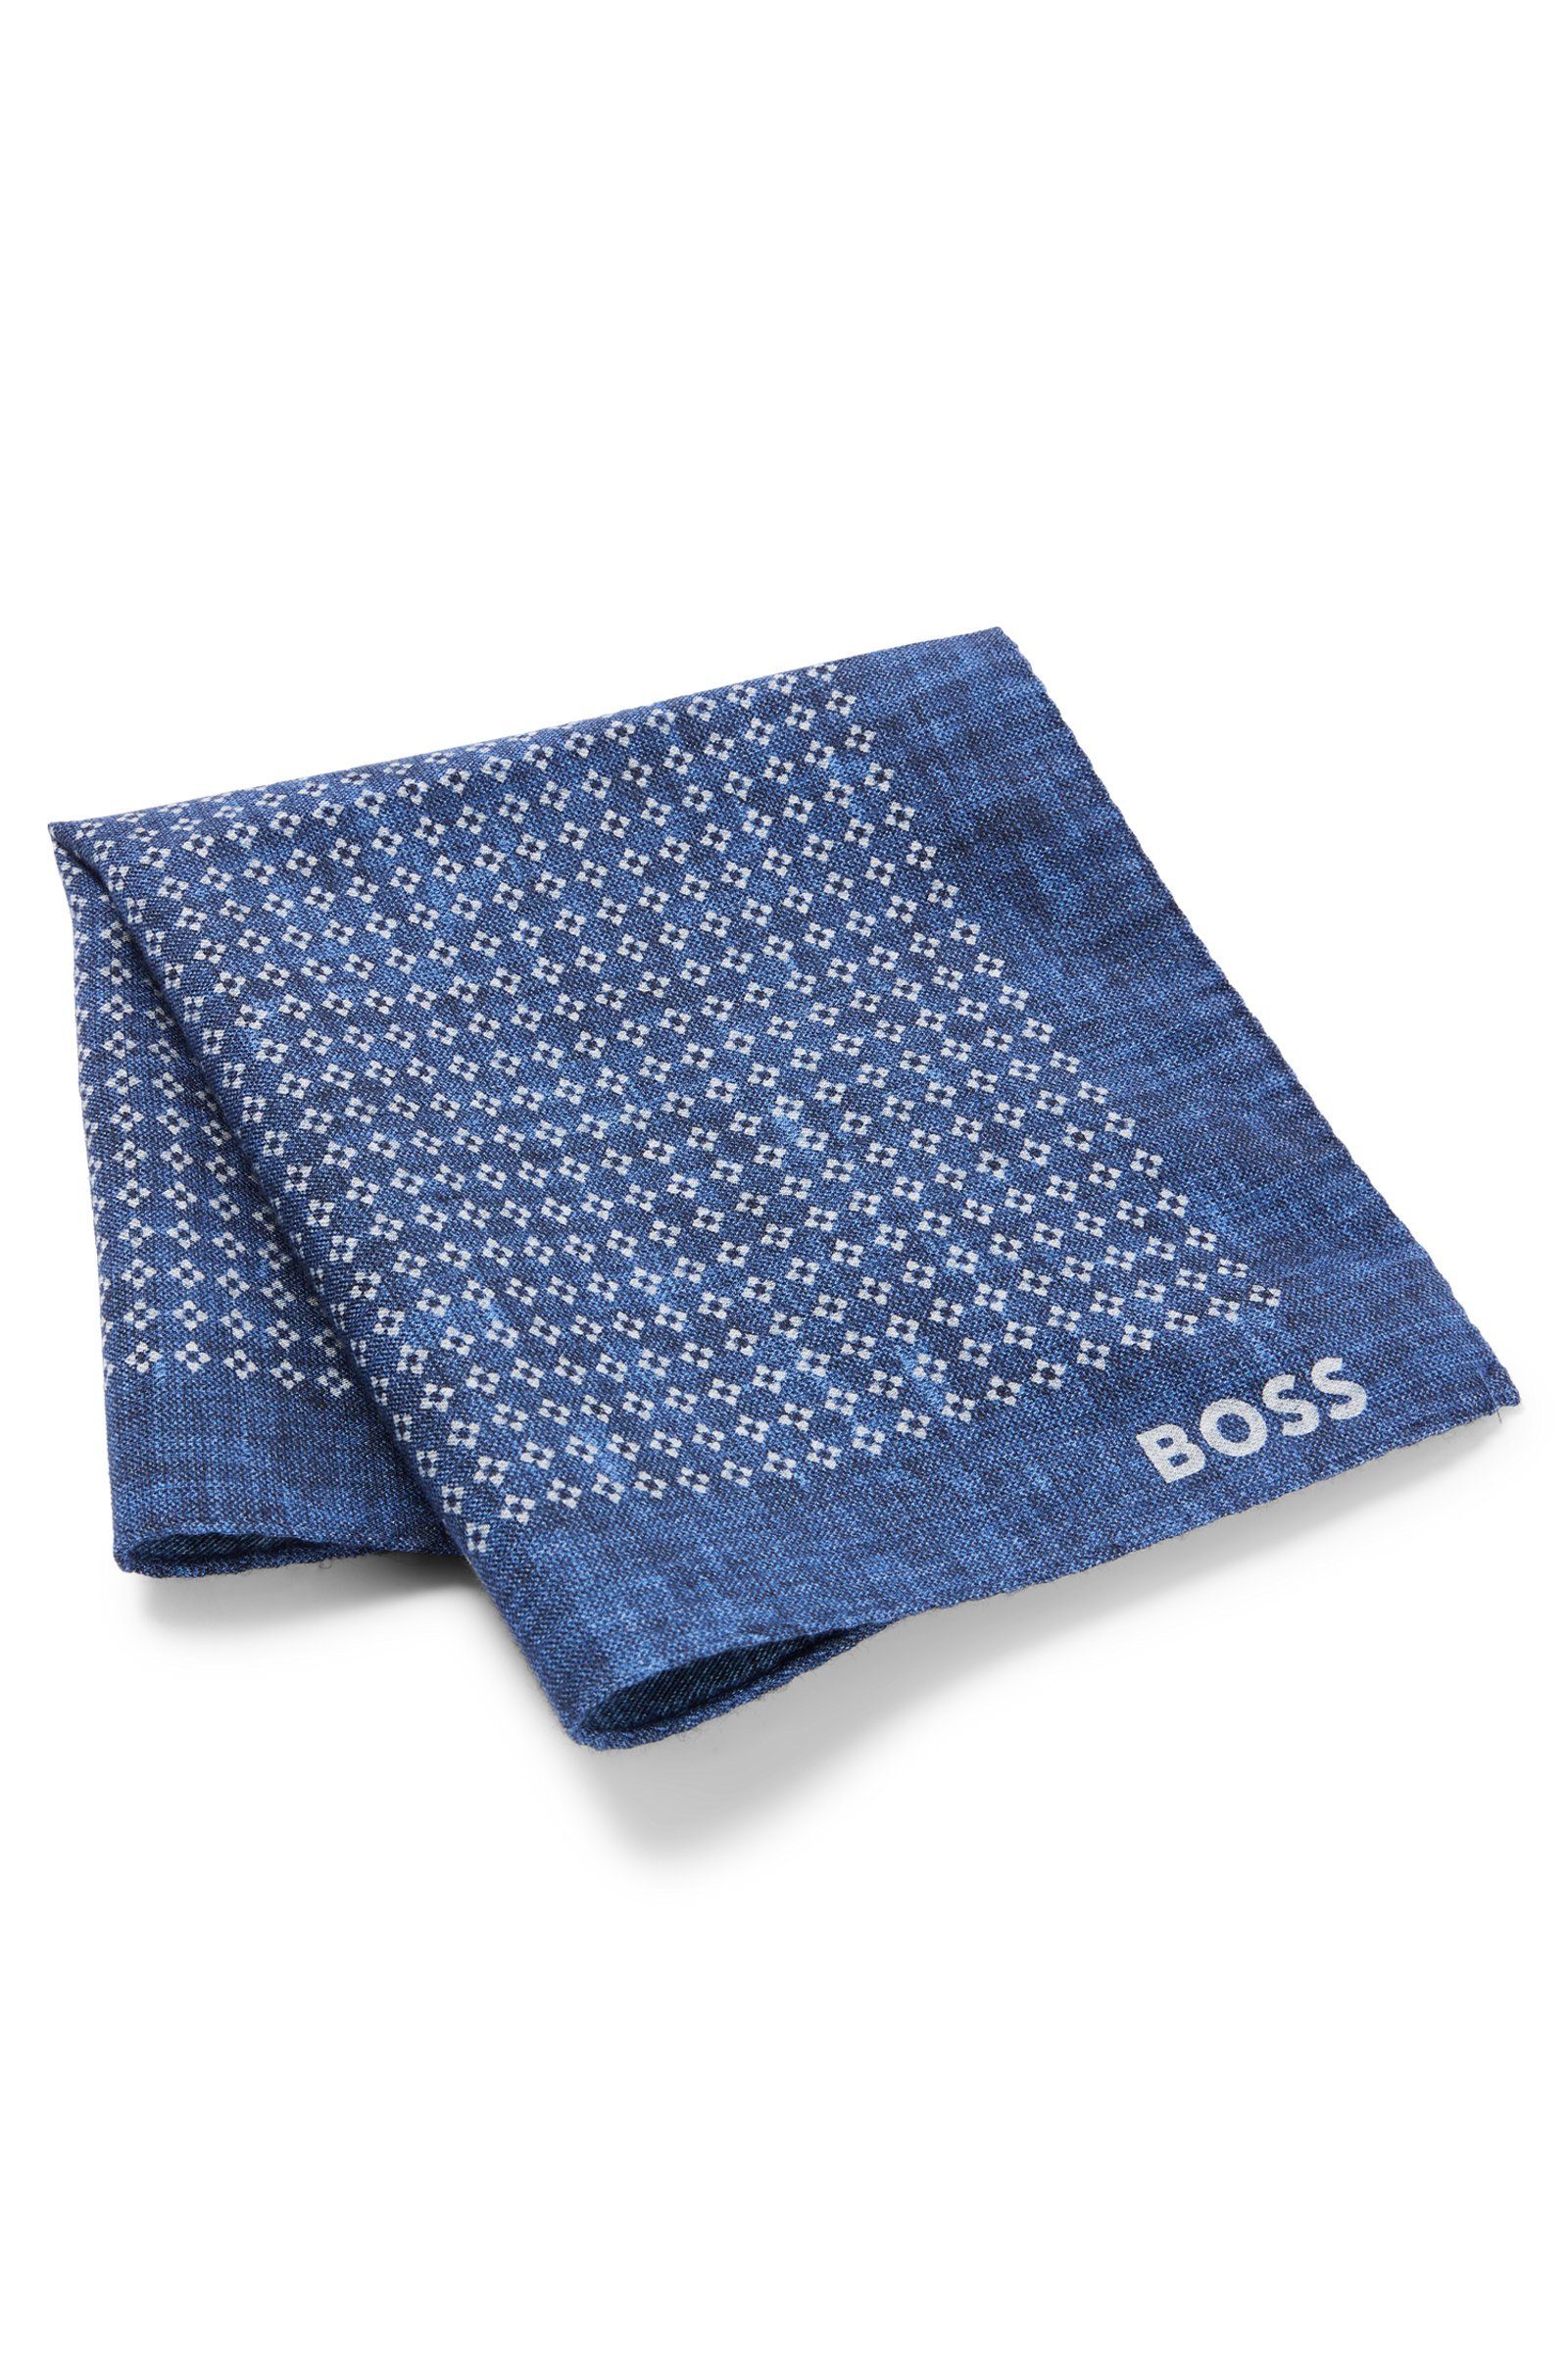 (476) Krawatte Angabe) BOSS SQ-222 H-POCKET Blau (keine